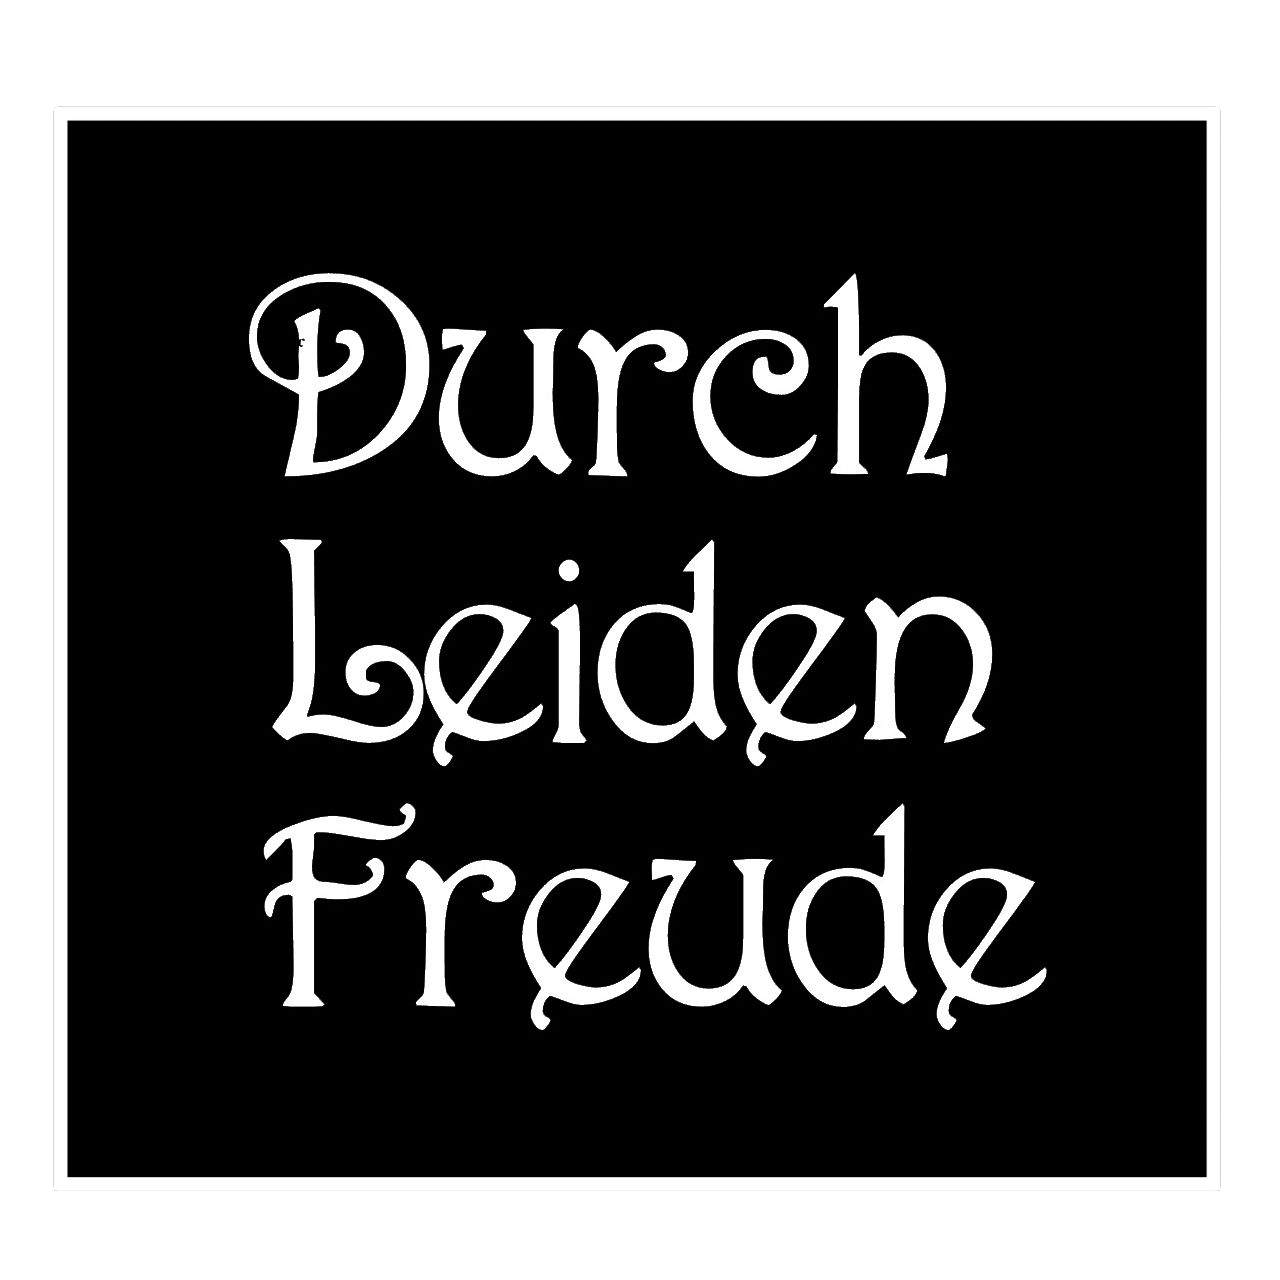 ウォールステッカー 名言 白 マット ベートーベン ドイツ語 Durch Leiden Freude Iby アイバイ ウォールステッカー 通販